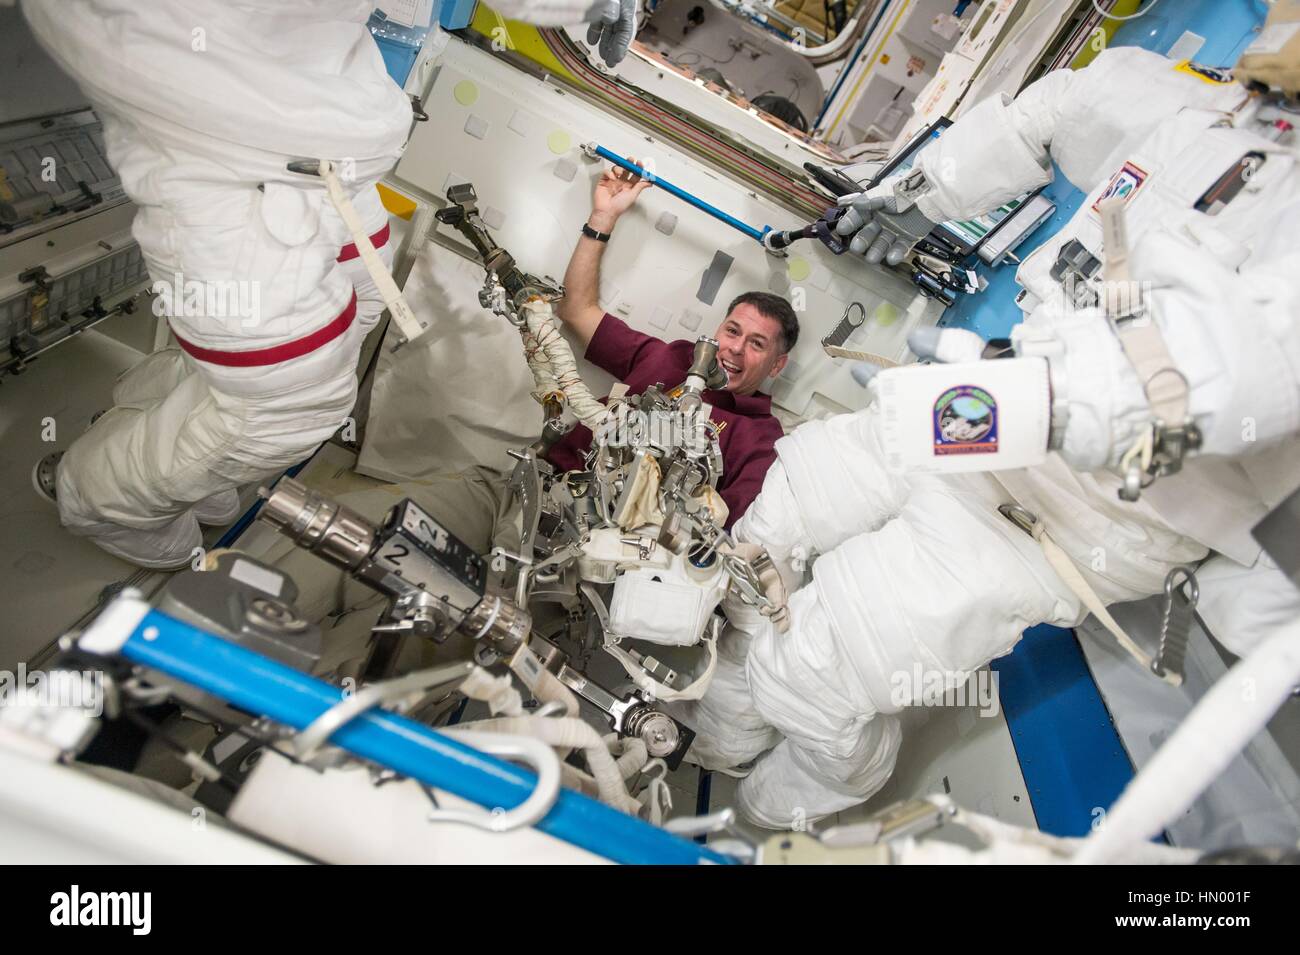 NASA-Expedition 50 erstklassige Besatzung Astronaut amerikanischen Shane Kimbrough sammelt Werkzeuge in der internationalen Raumstation ISS Quest-Schleuse vor einen Weltraumspaziergang 13. Januar 2017 in der Erdumlaufbahn. Stockfoto